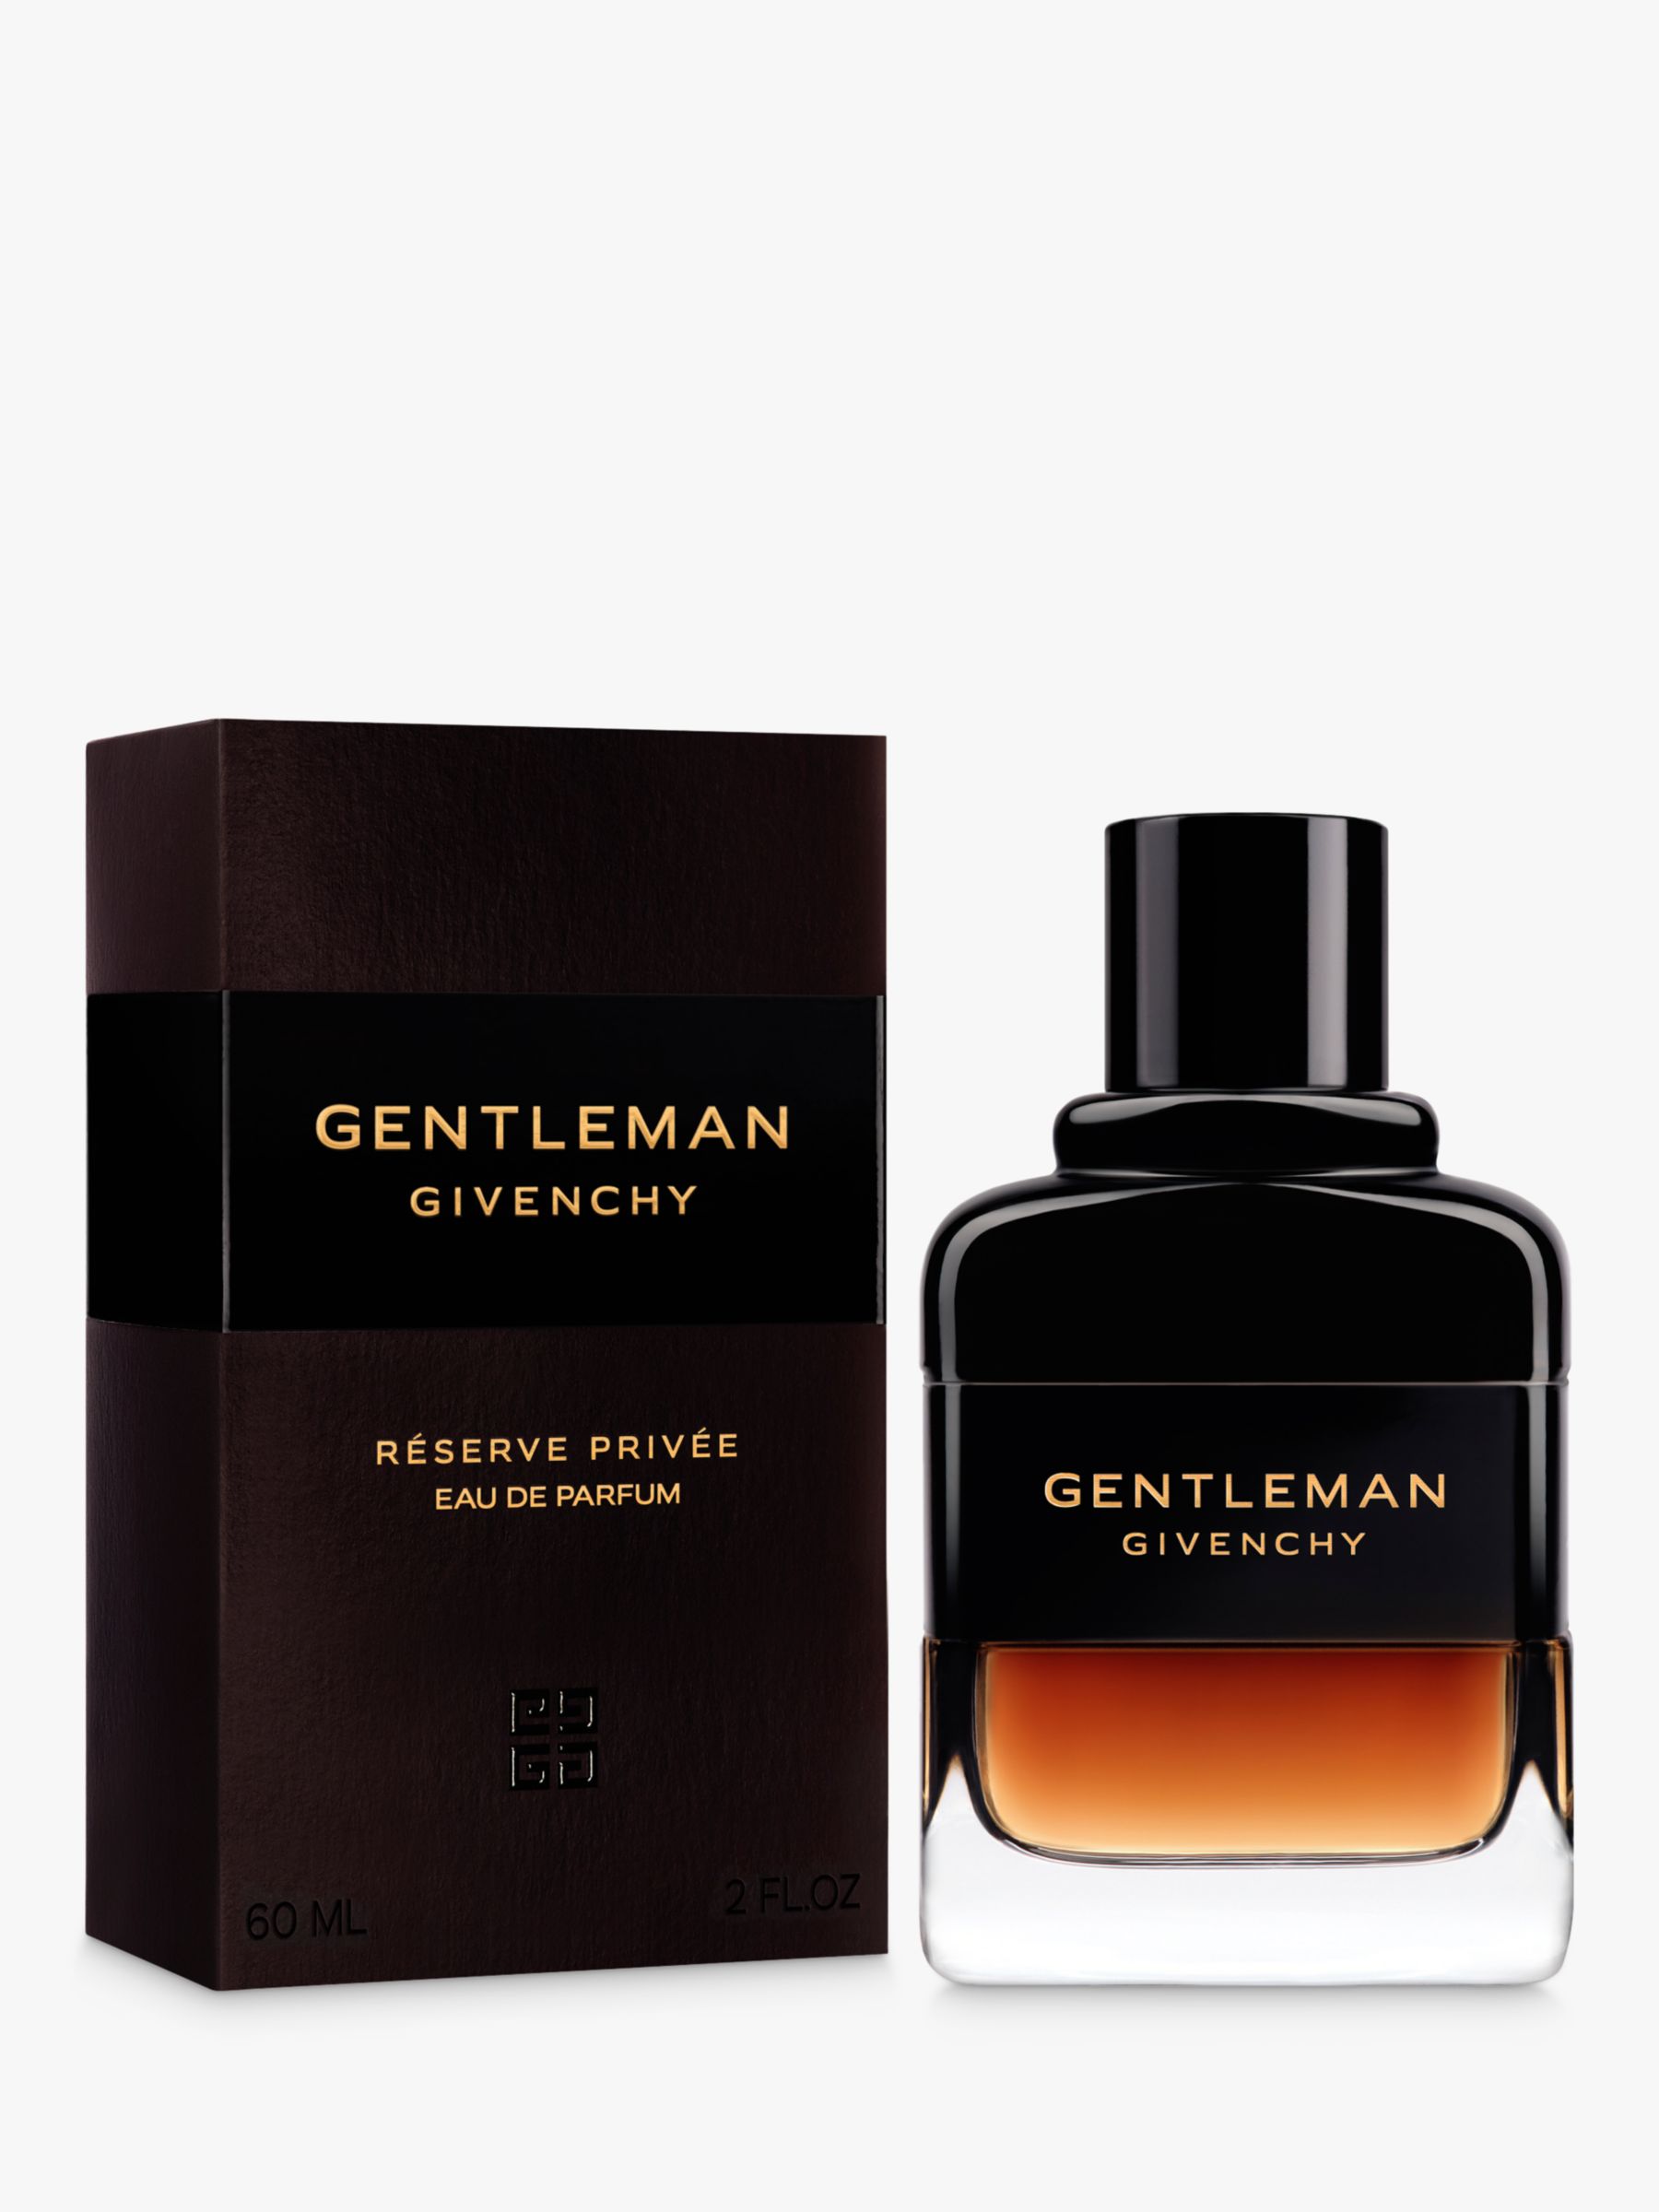 Givenchy Gentleman Reserve Privée Eau de Parfum, 60ml at John Lewis ...